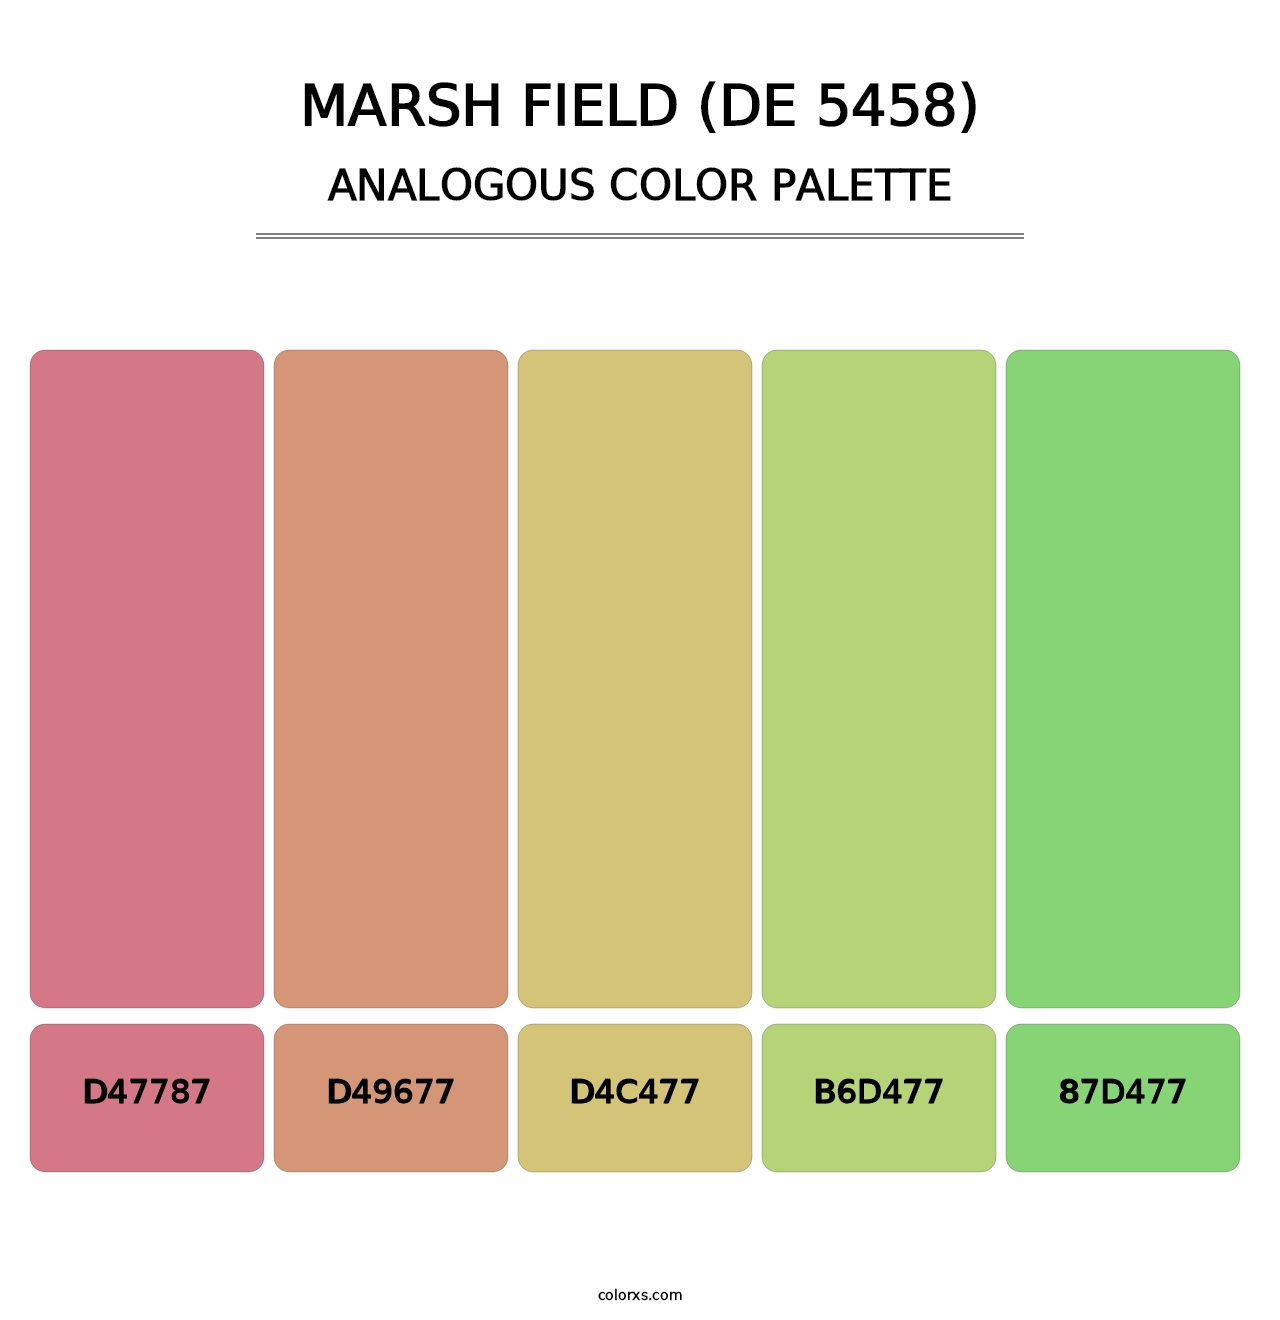 Marsh Field (DE 5458) - Analogous Color Palette